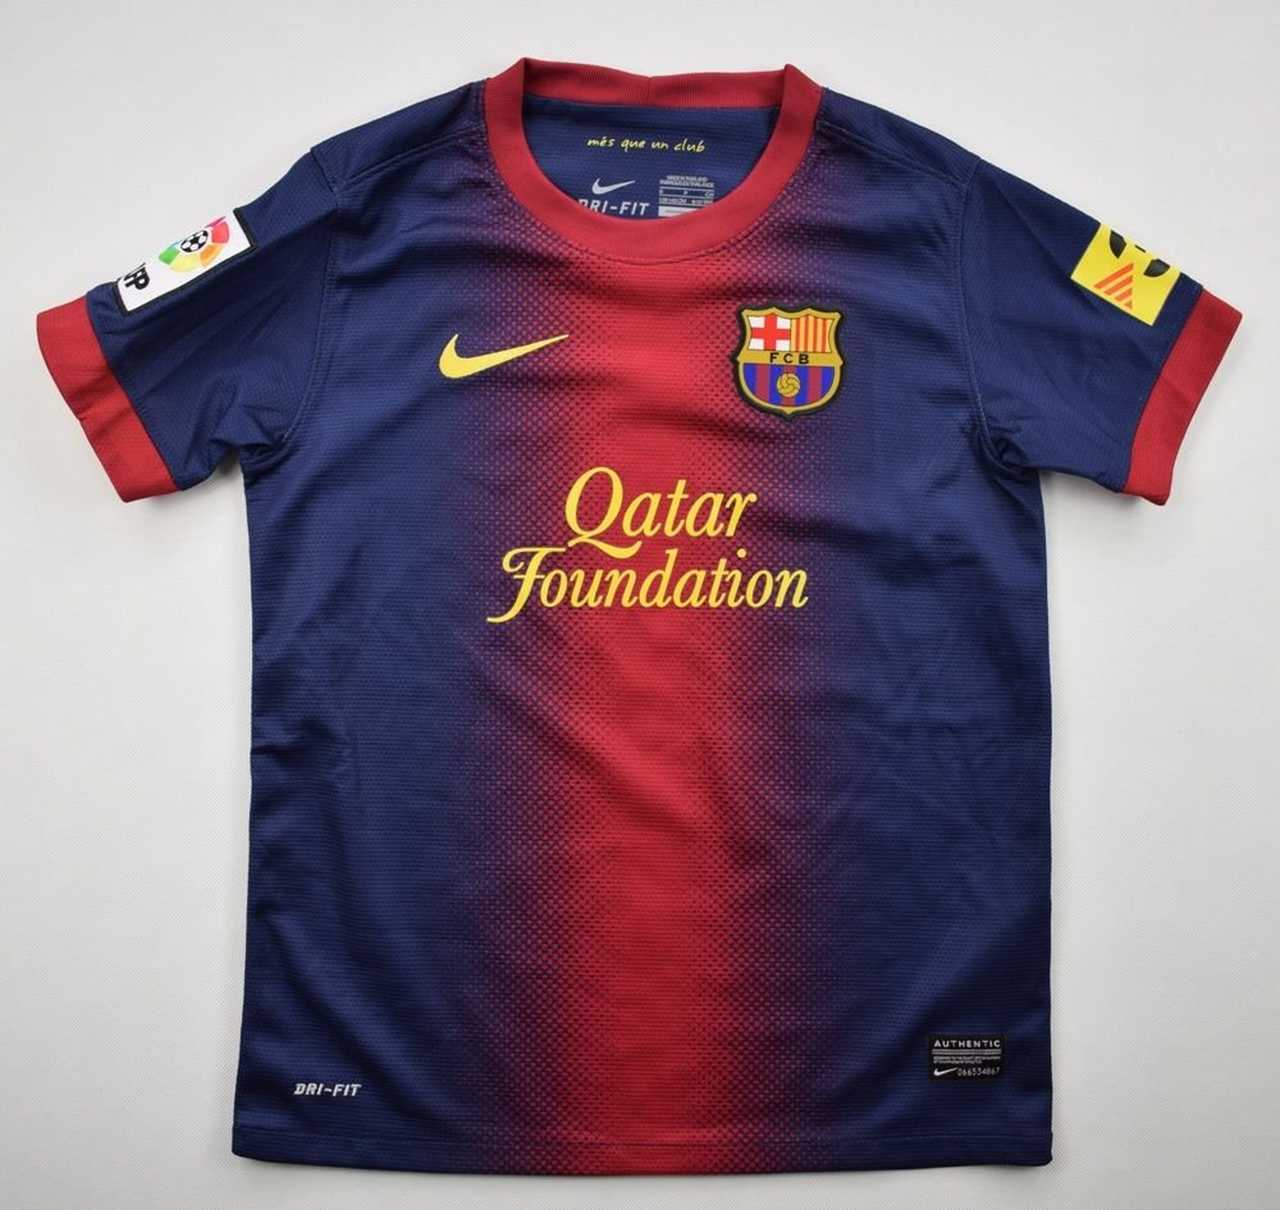 Qual a camisa do Barcelona mais bonita?